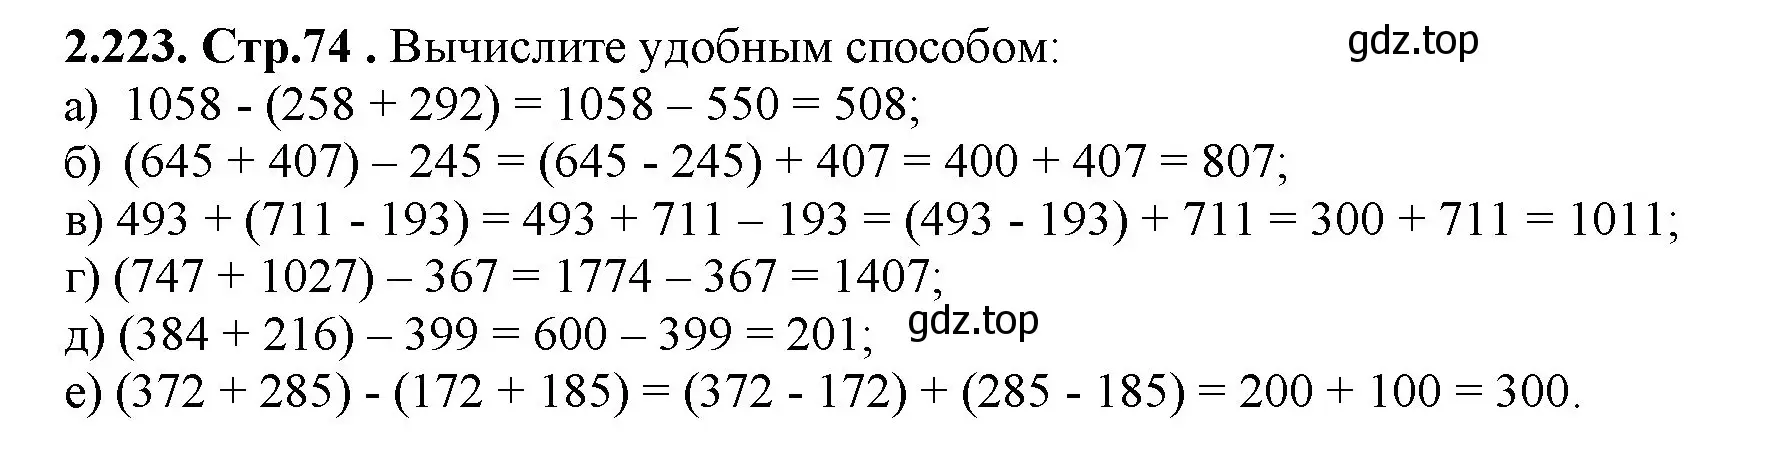 Математика 5 класс учебник номер 246. Математика 5 класс Виленкин №1815. 246535-85897 1306. Математика 5 класс номер 336. Готовое домашнее задание по математике номер 336.